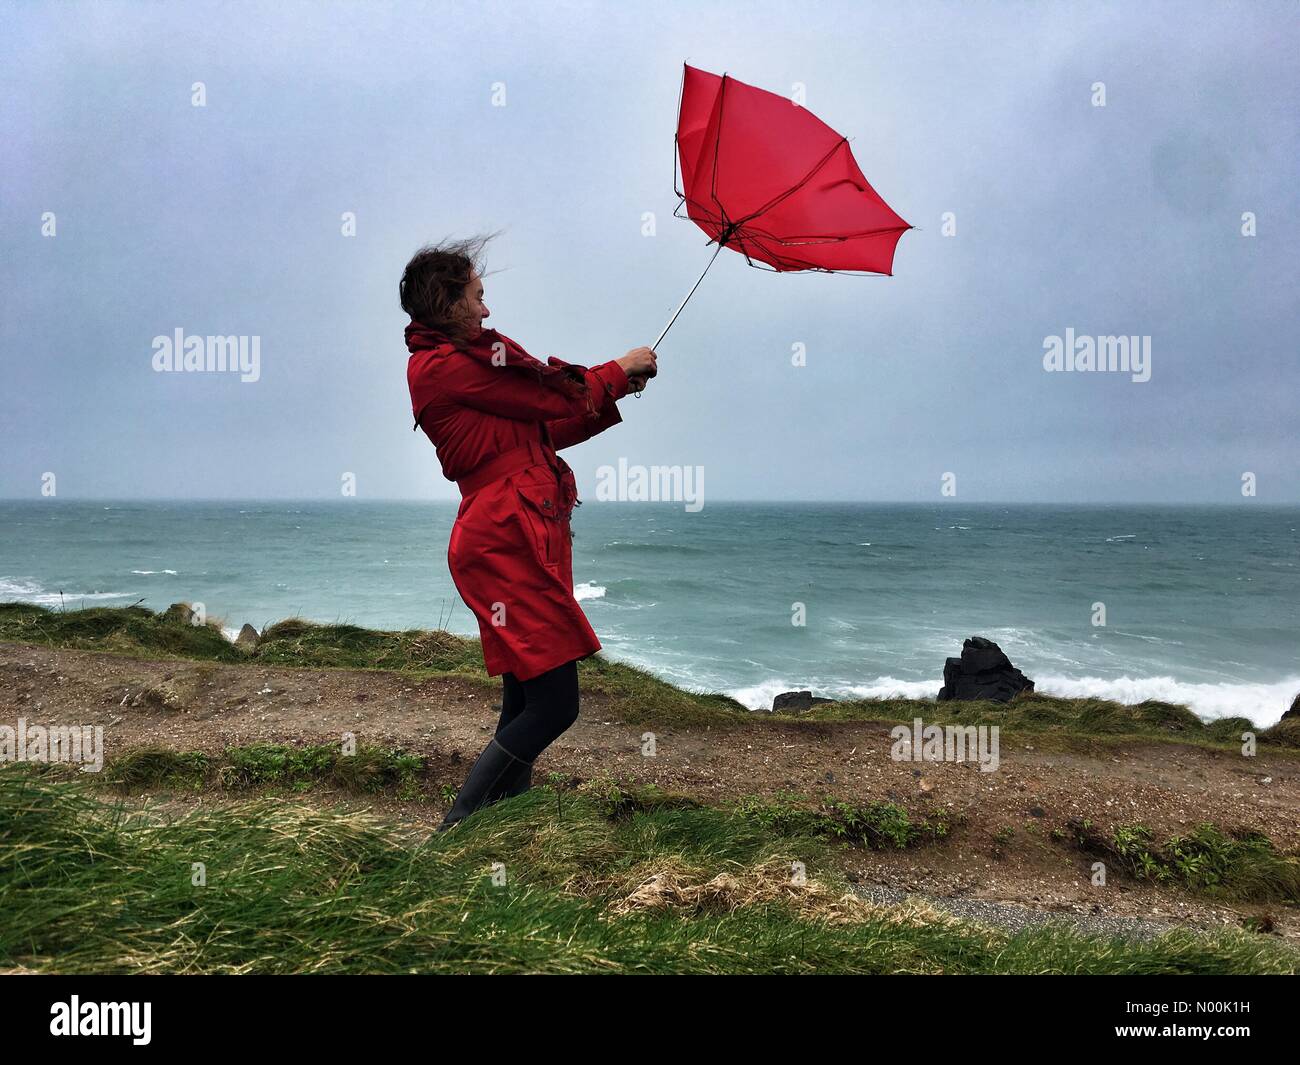 El clima del REINO UNIDO: día ventoso de coloridas sombrillas en St Ives. Raich Keene peleas fuertes ráfagas de viento con su paraguas en la costa de St Ives. Foto de stock